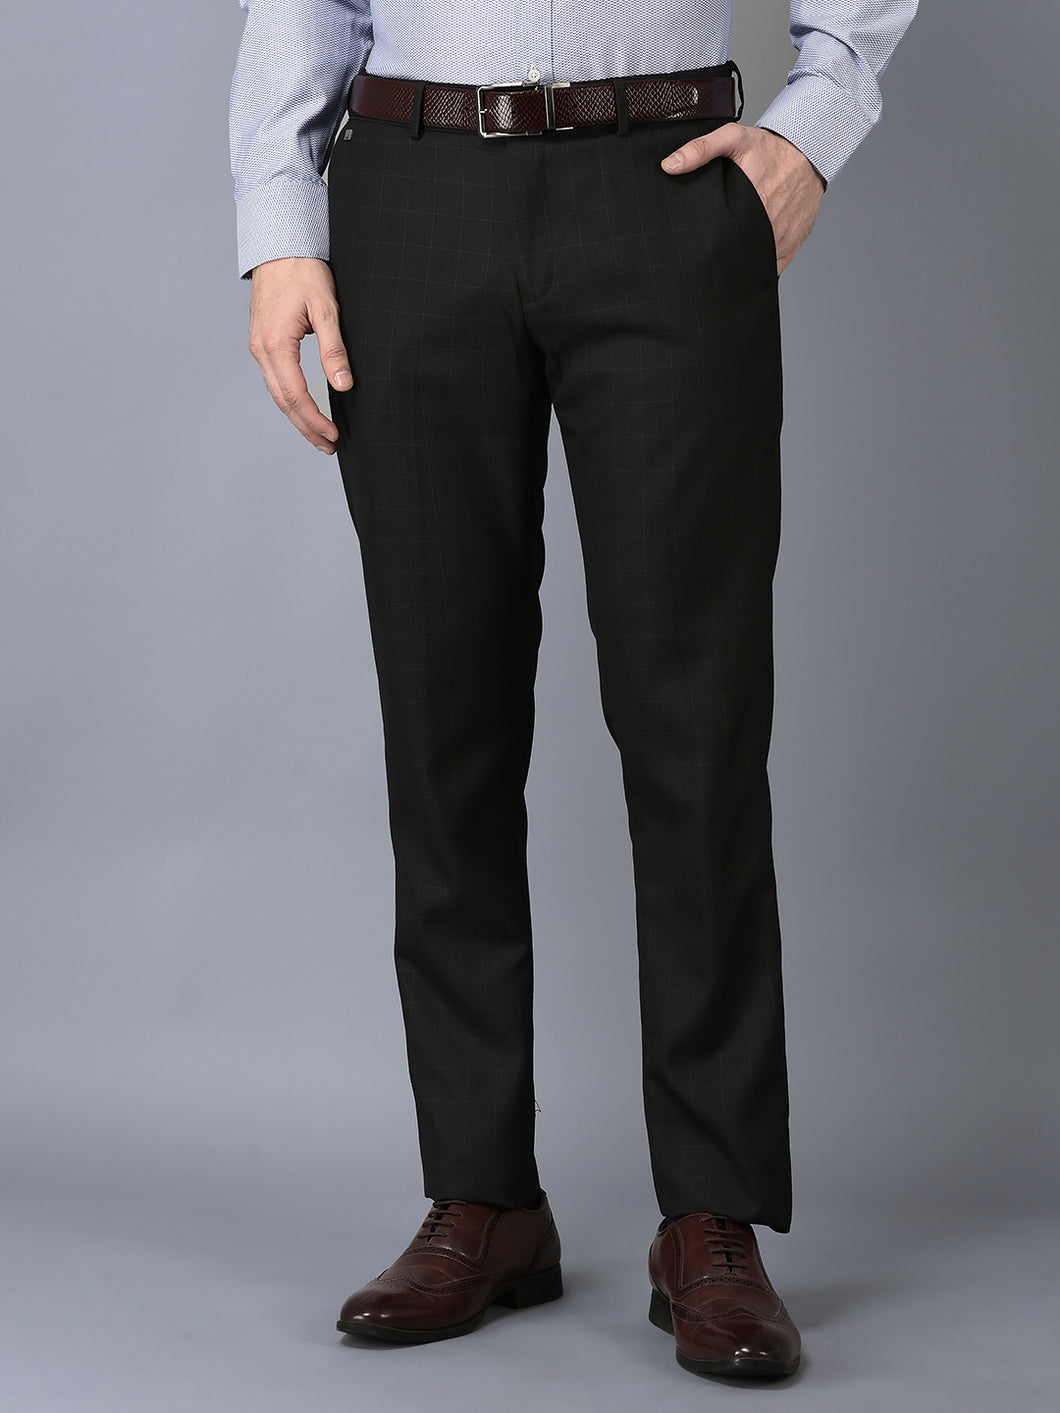 CANOE MEN Formal Trouser Black Color